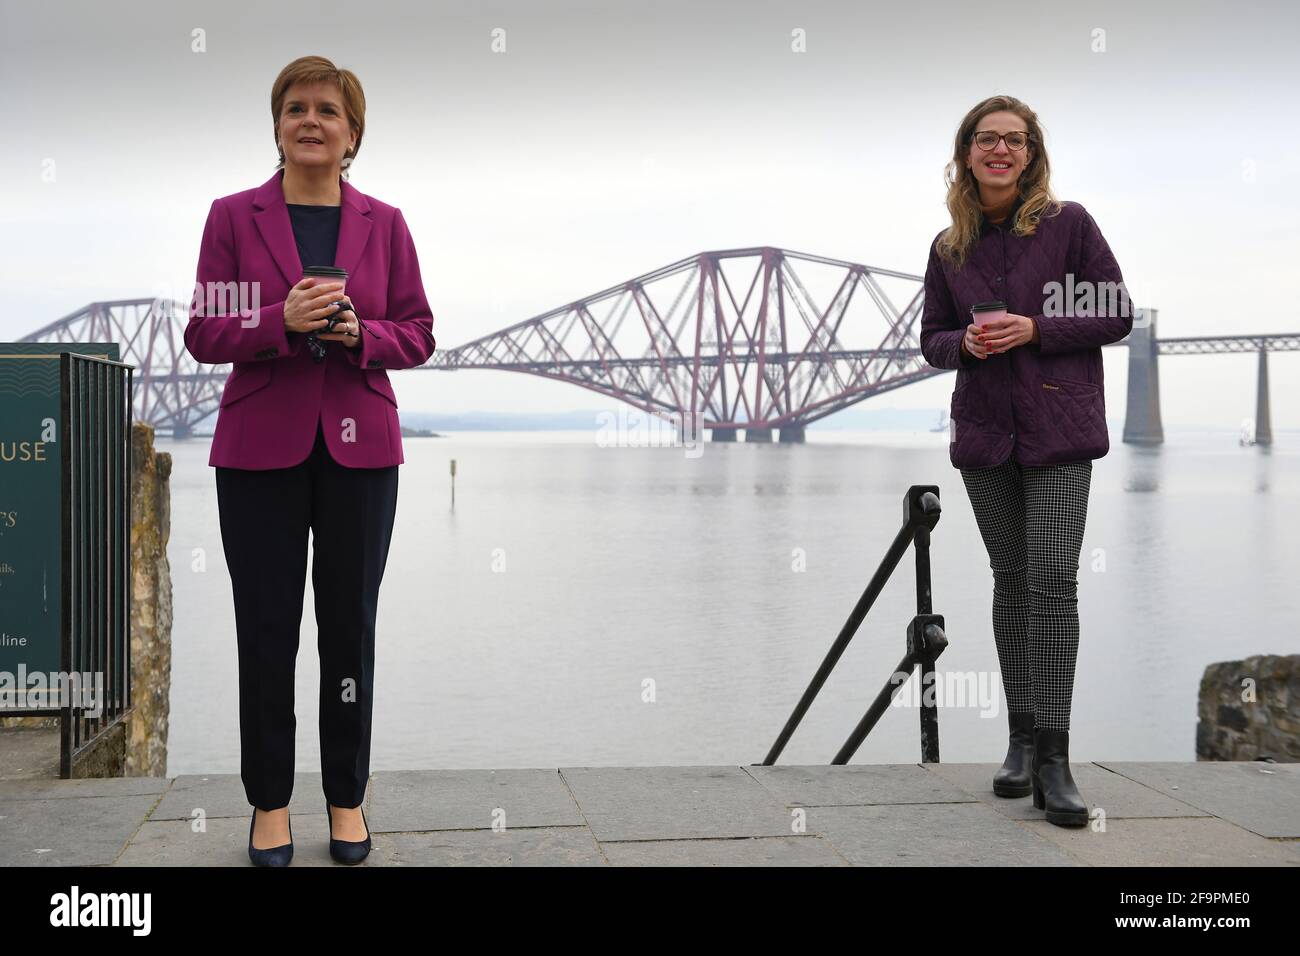 Schottlands erste Ministerin Nicola Sturgeon, Vorsitzende der Scottish National Party (SNP), mit der Kandidatin der Edinburgher Western Sarah Masson (rechts) neben dem Firth of Forth und der Forth Bridge, während sie während ihrer Wahlkampagne für die schottischen Parlamentswahlen in South Queensferry kämpft. Bilddatum: Dienstag, 20. April 2021. Stockfoto